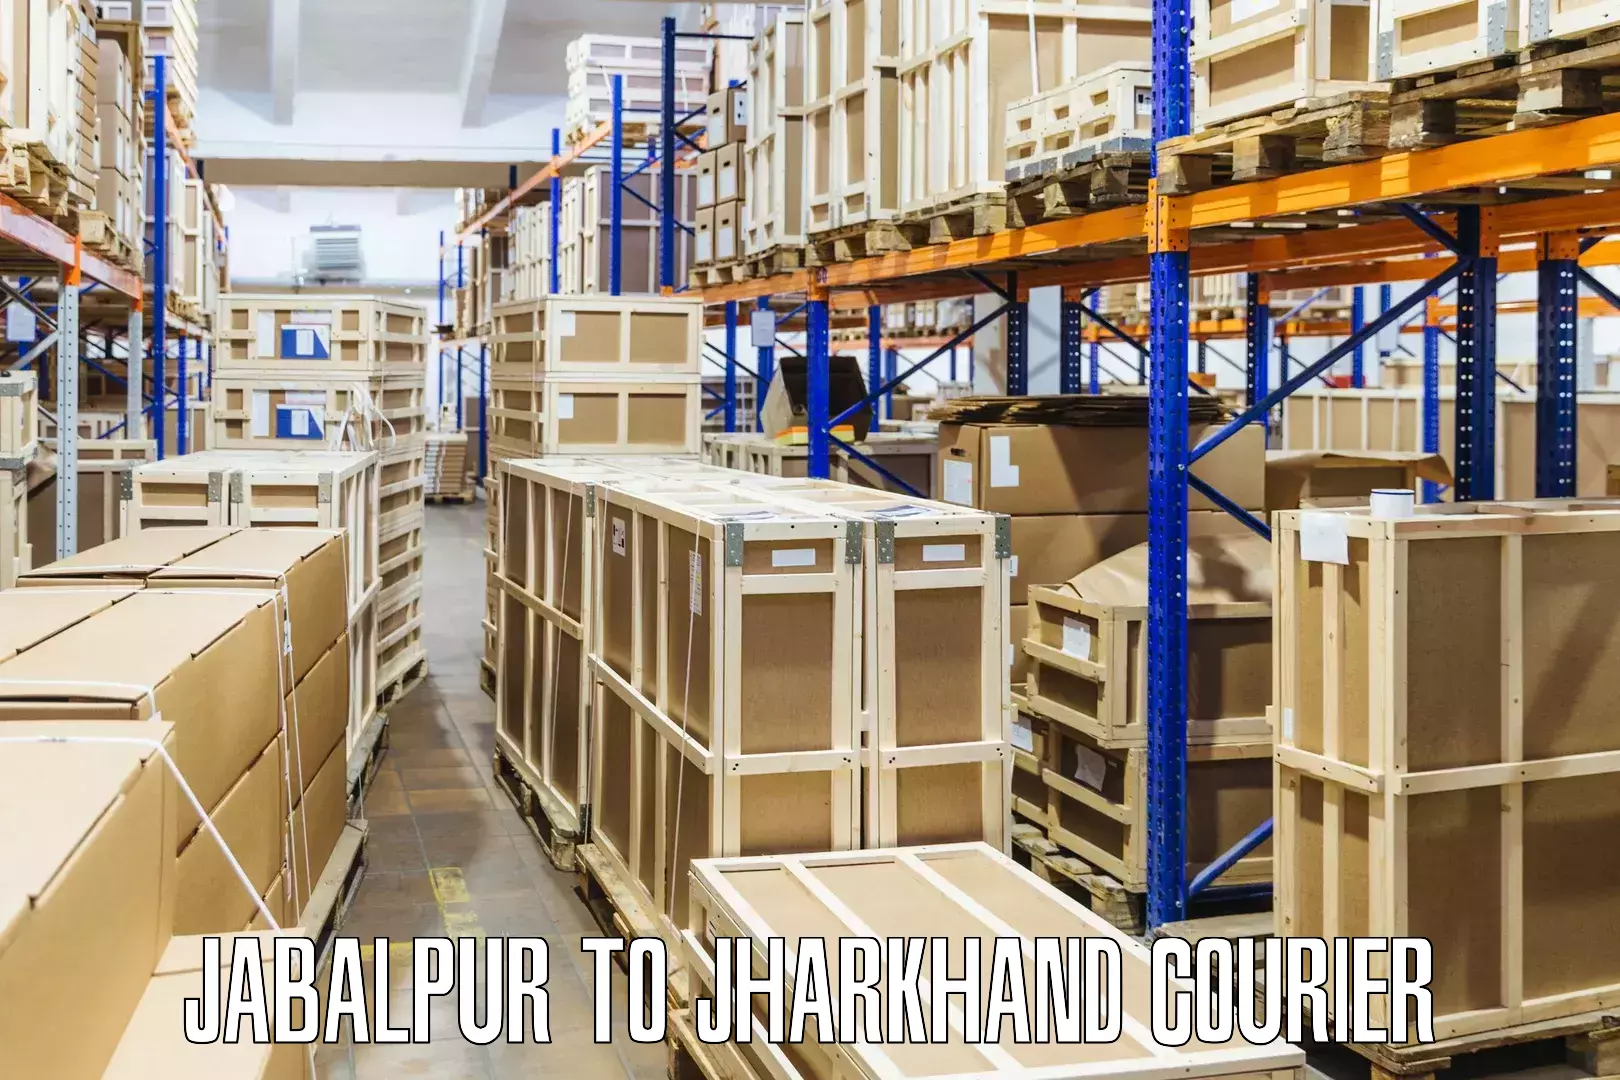 User-friendly courier app Jabalpur to Seraikela Kharsawan